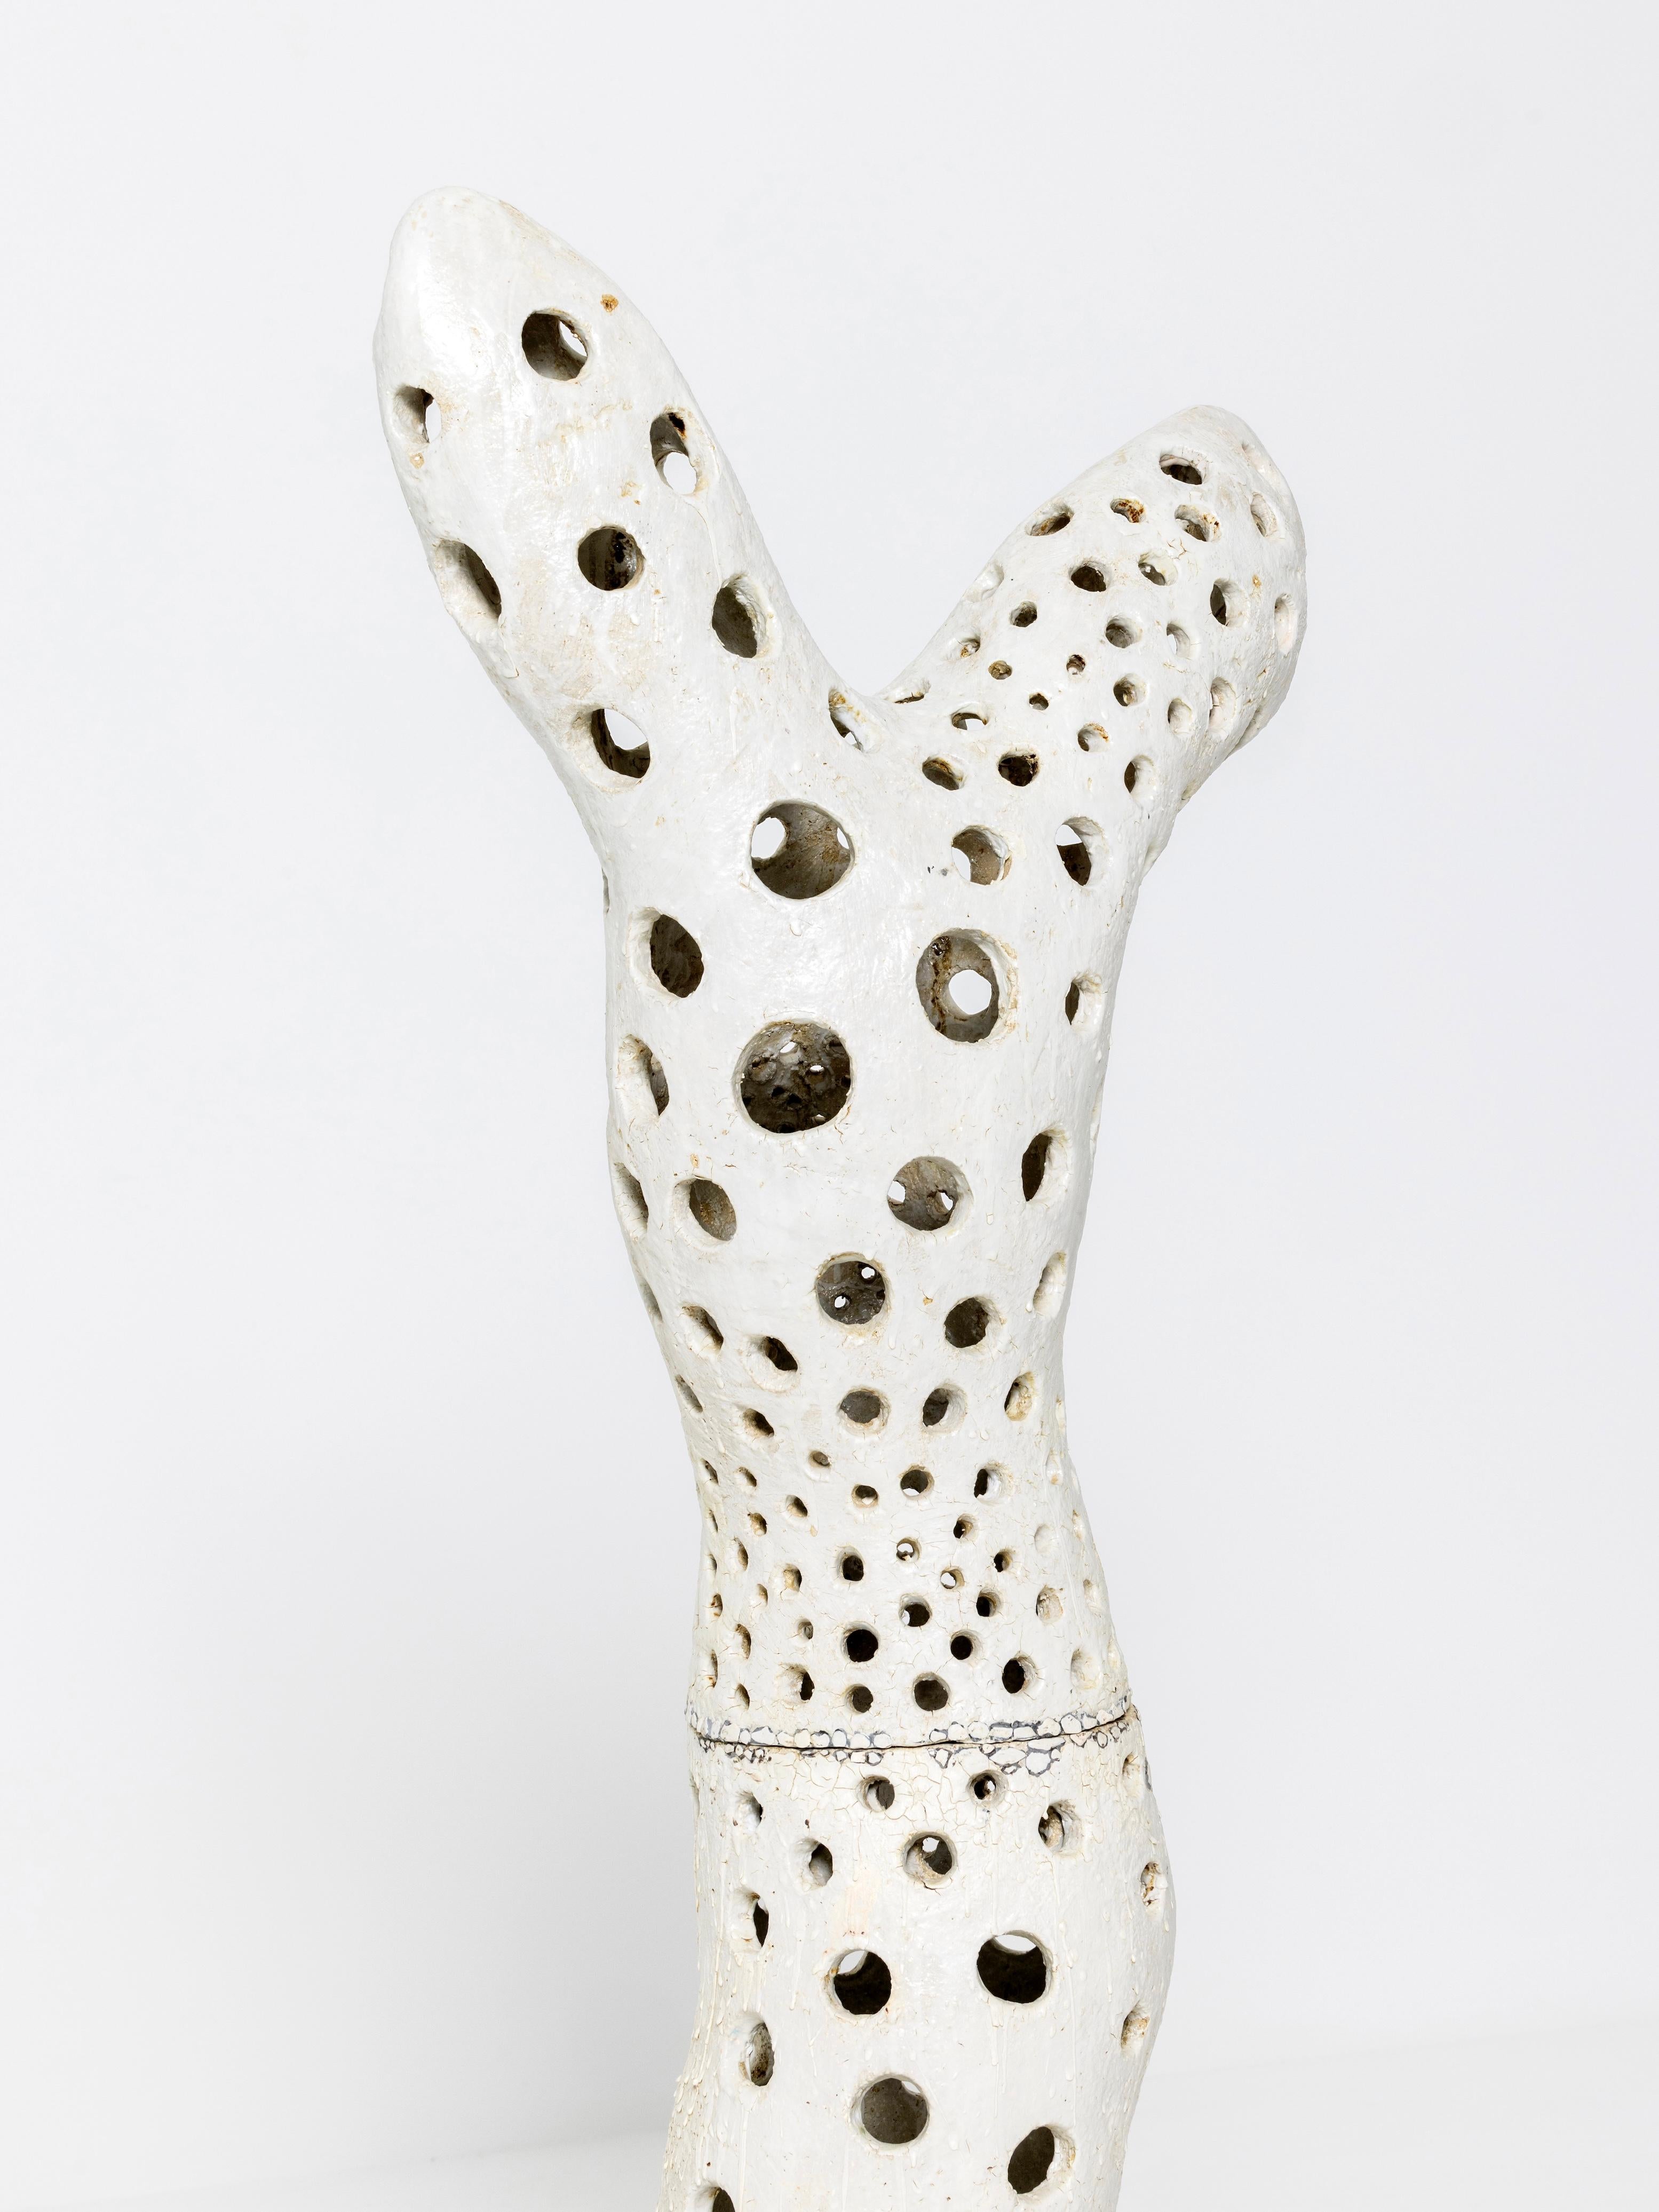 Contemporary Ceramic Sculpture 